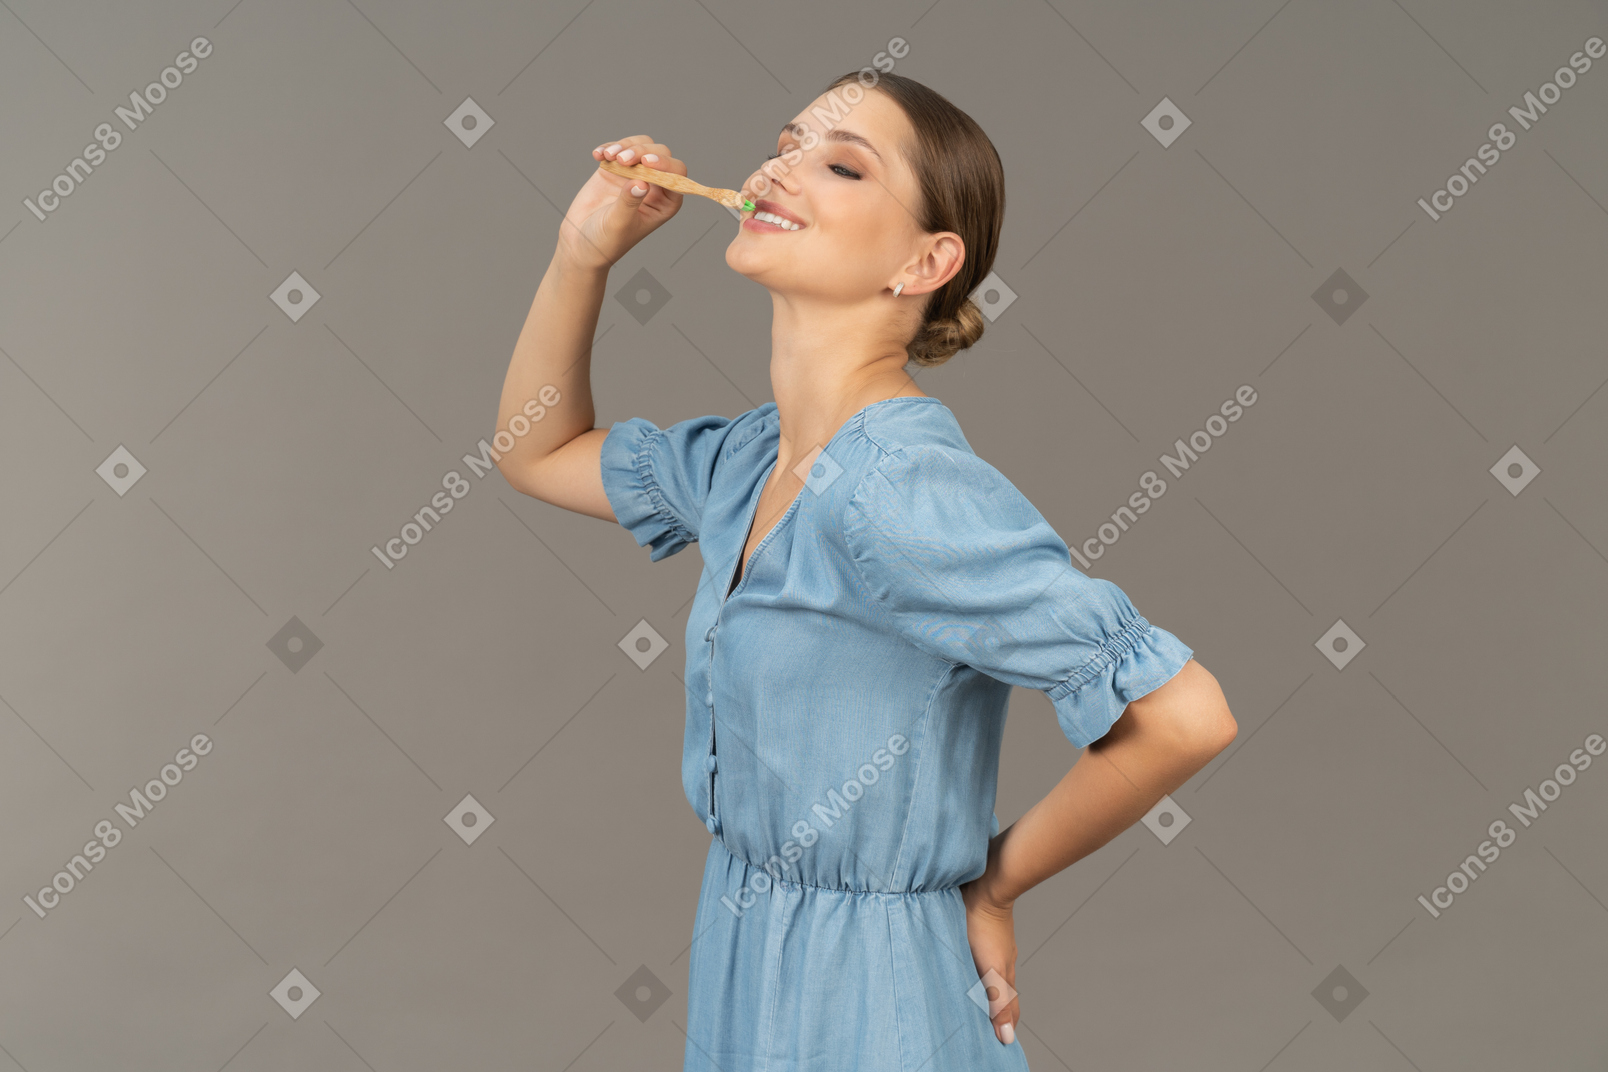 Vue de trois quarts d'une jeune femme en robe bleue se brosser les dents